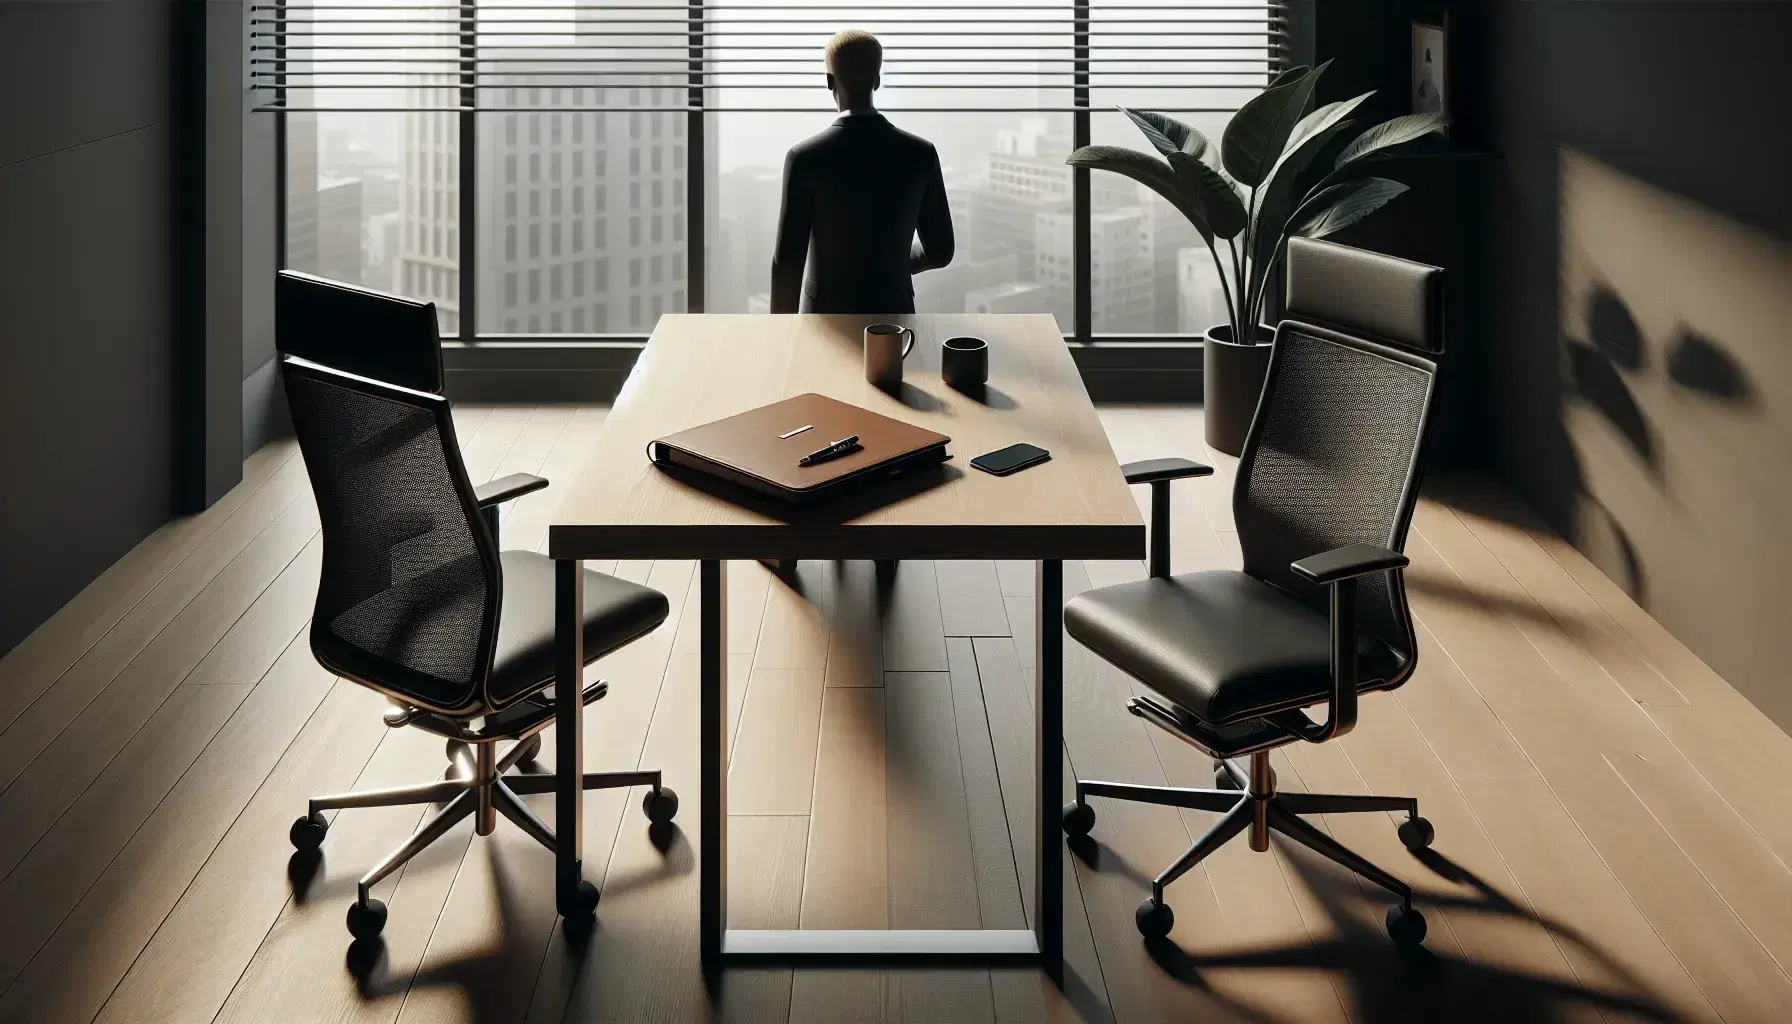 Oficina moderna con mesa de madera, silla ocupada por persona en traje, silla vacía, portafolio, taza de café y planta, iluminada por luz natural.